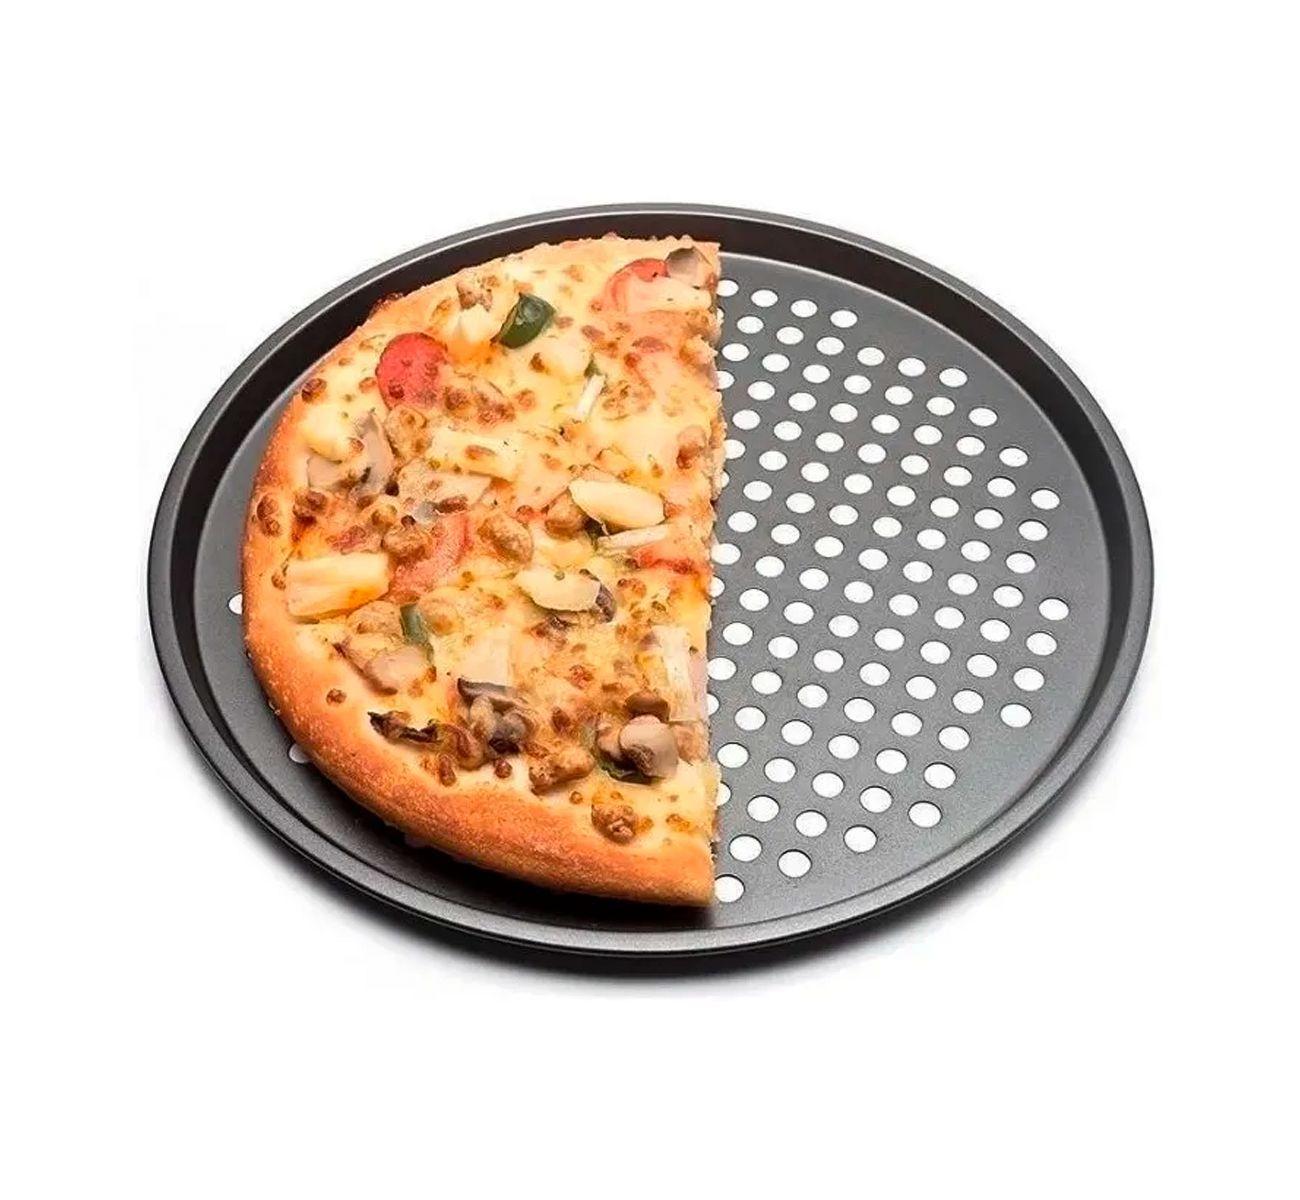 форма для пиццы с дырочками как пользоваться в духовке фото 105